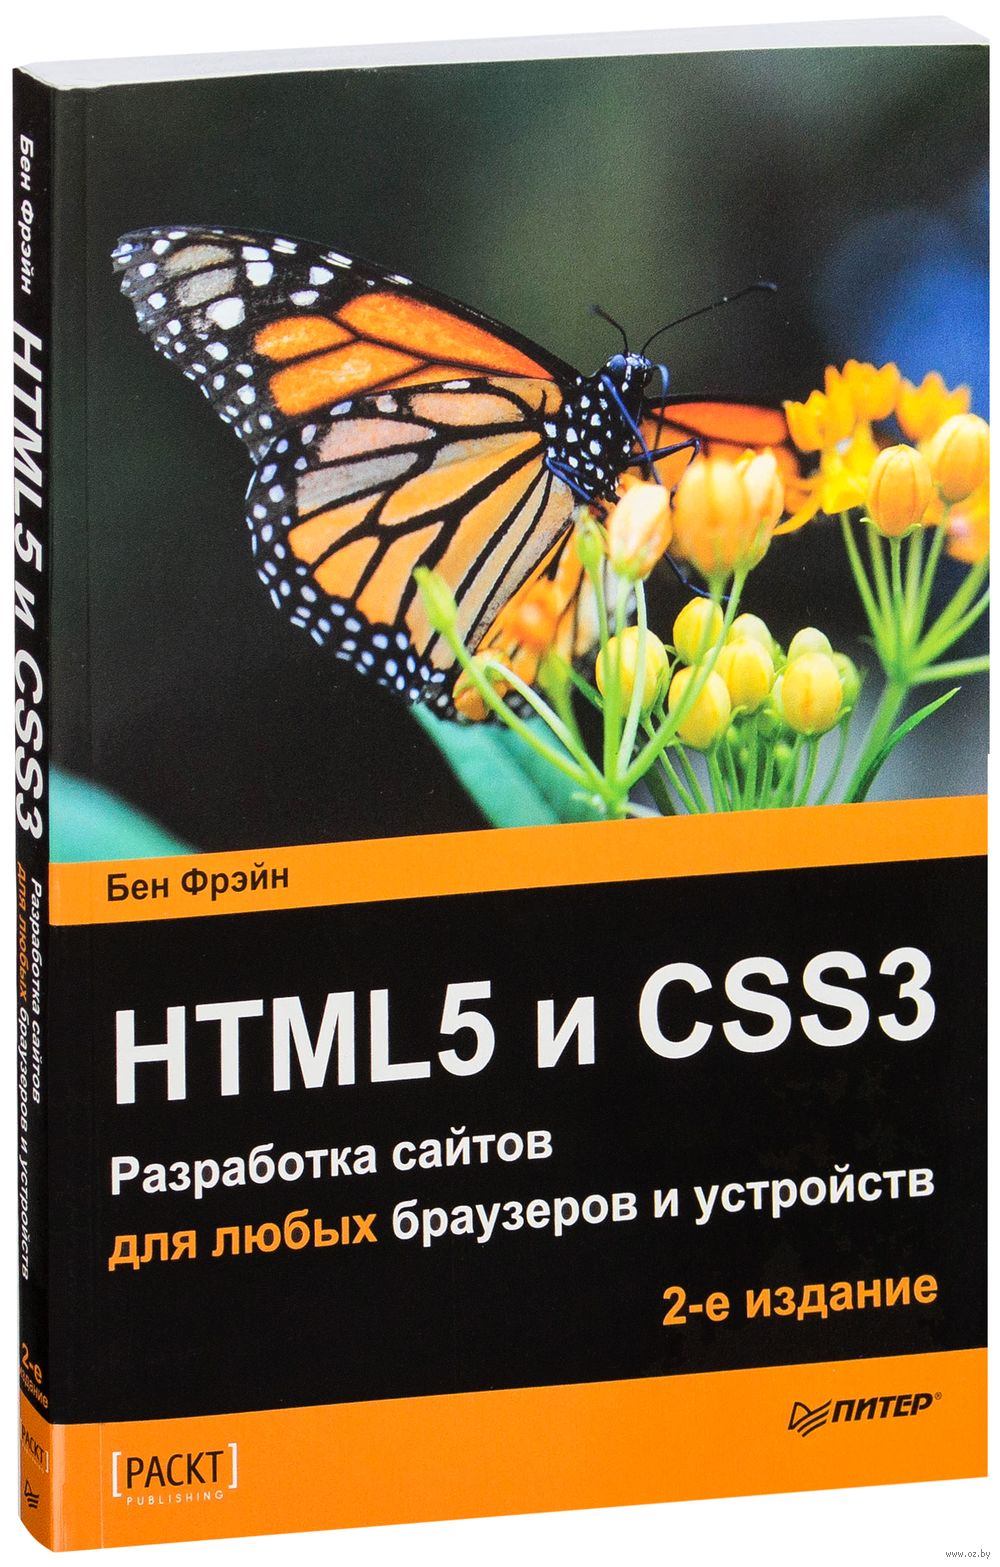 Книга по html5 для начинающих скачать